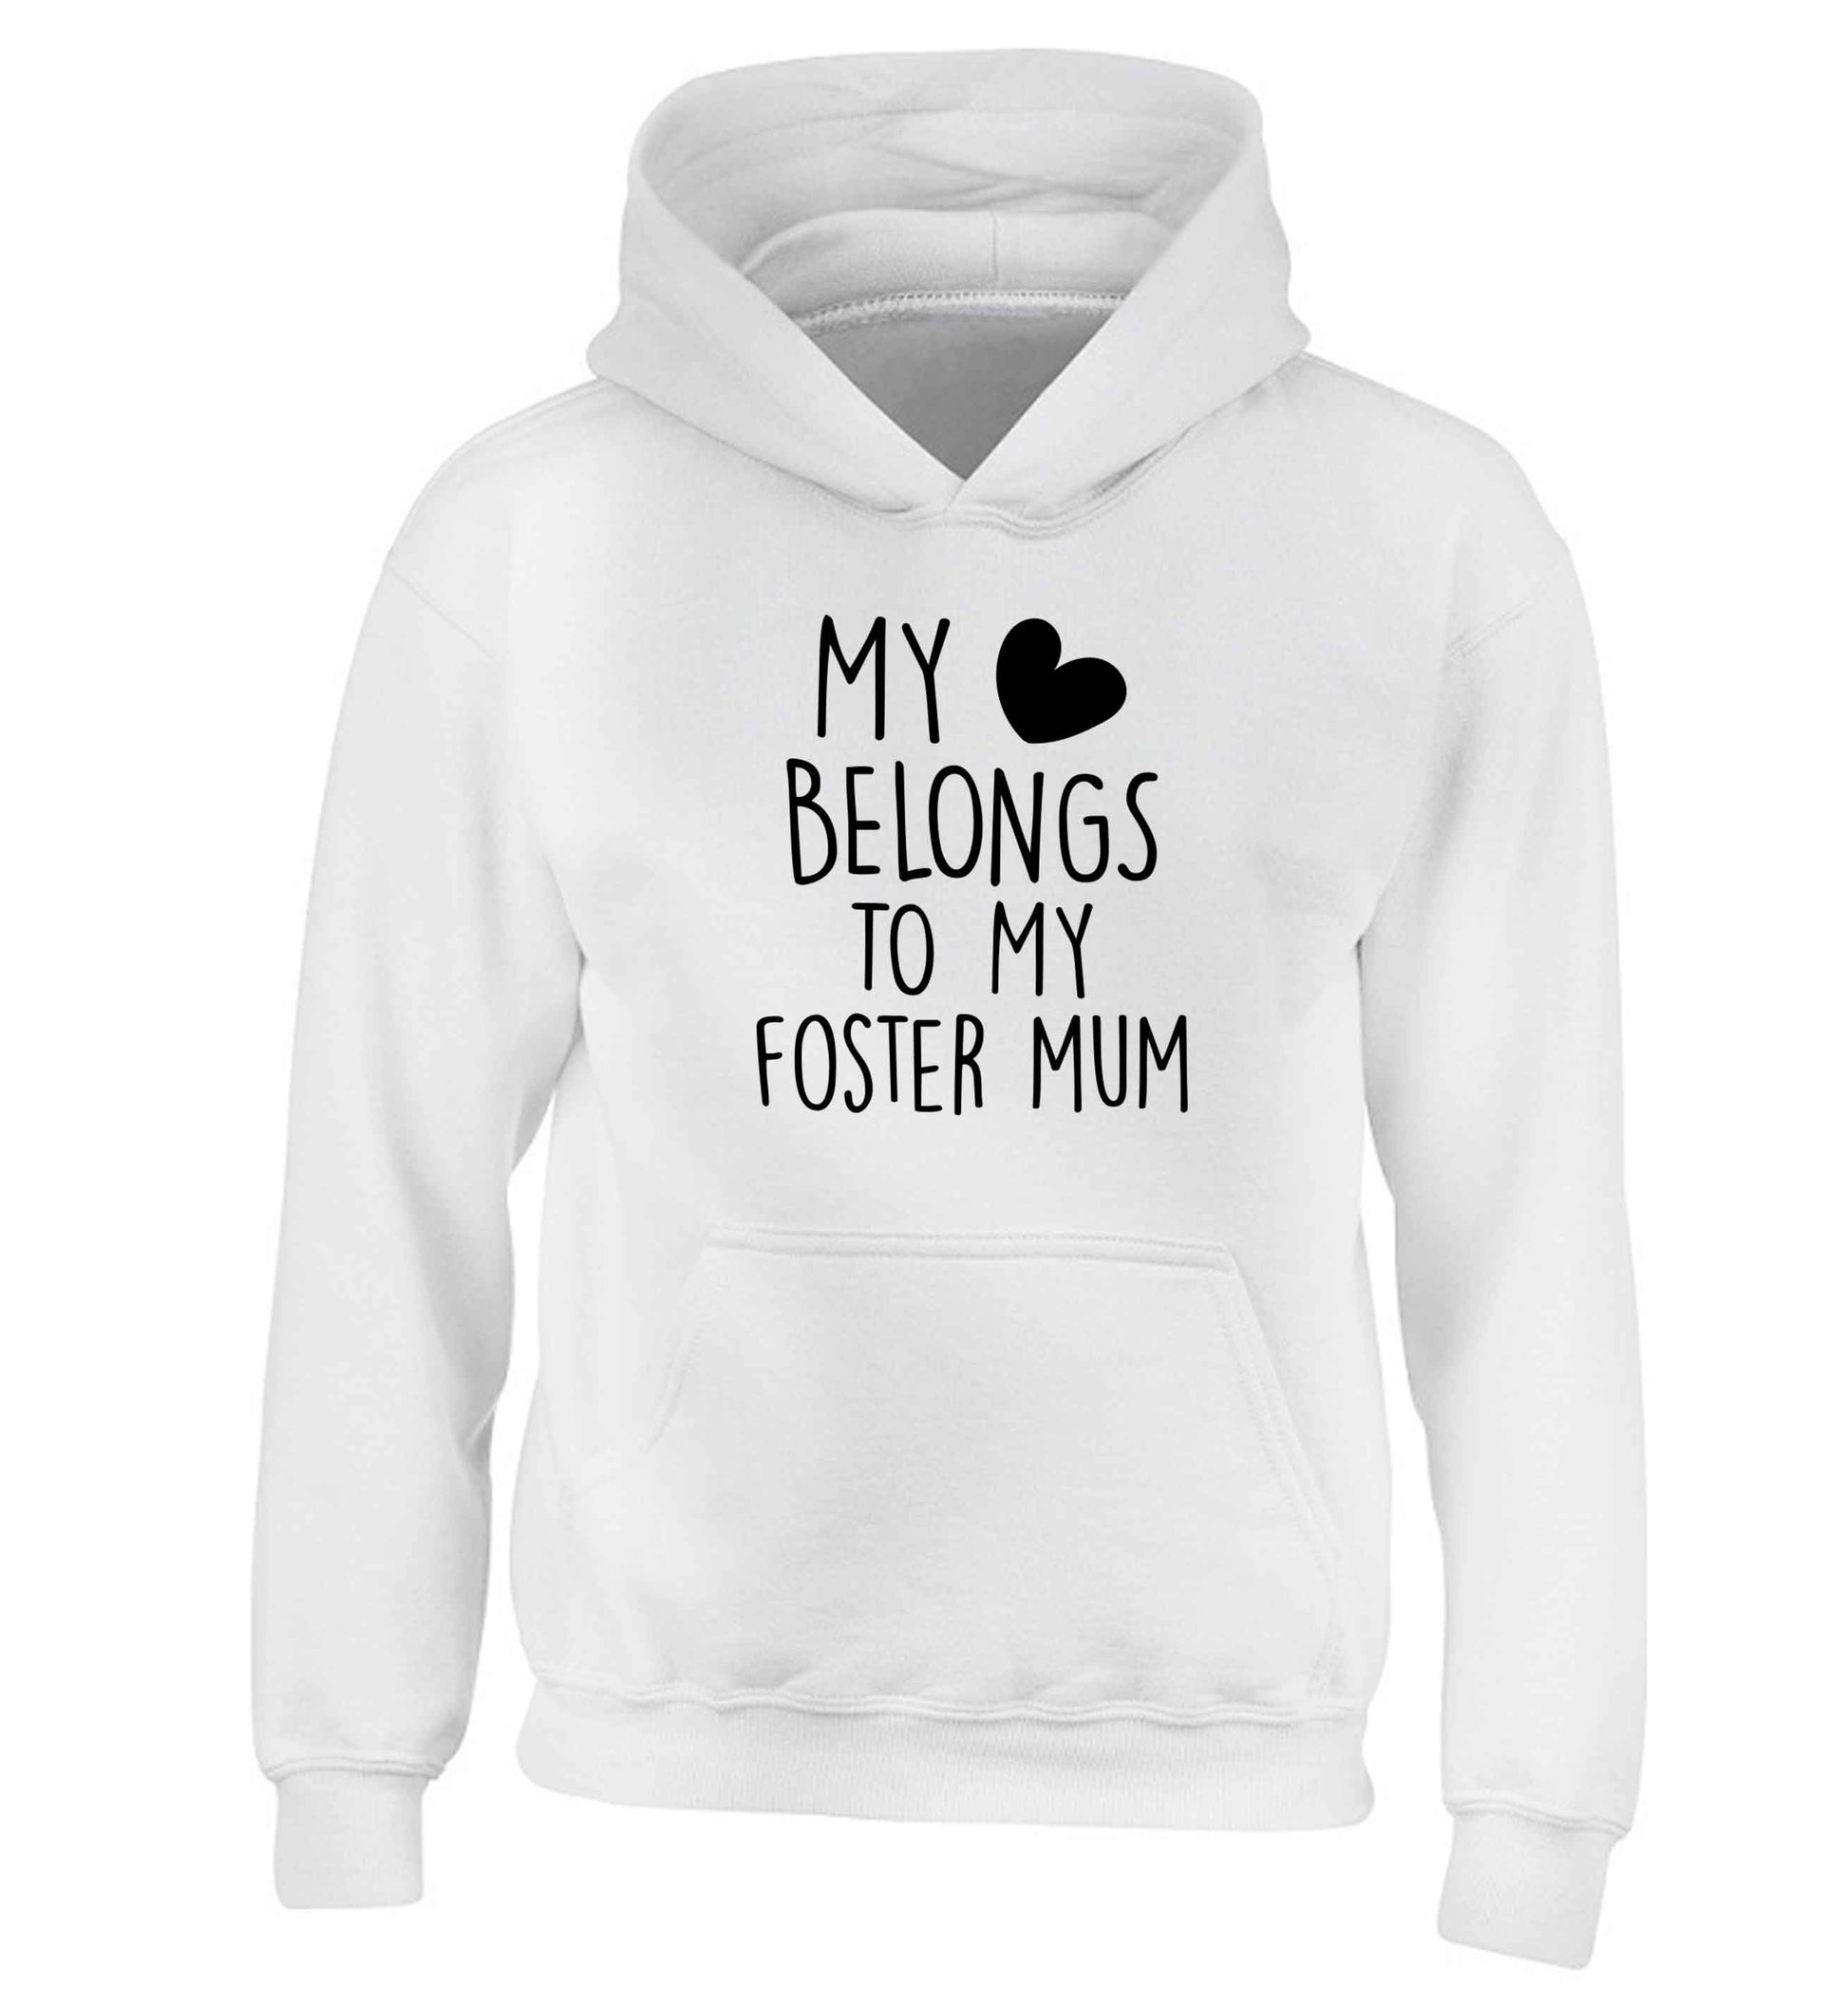 My heart belongs to my foster mum children's white hoodie 12-13 Years